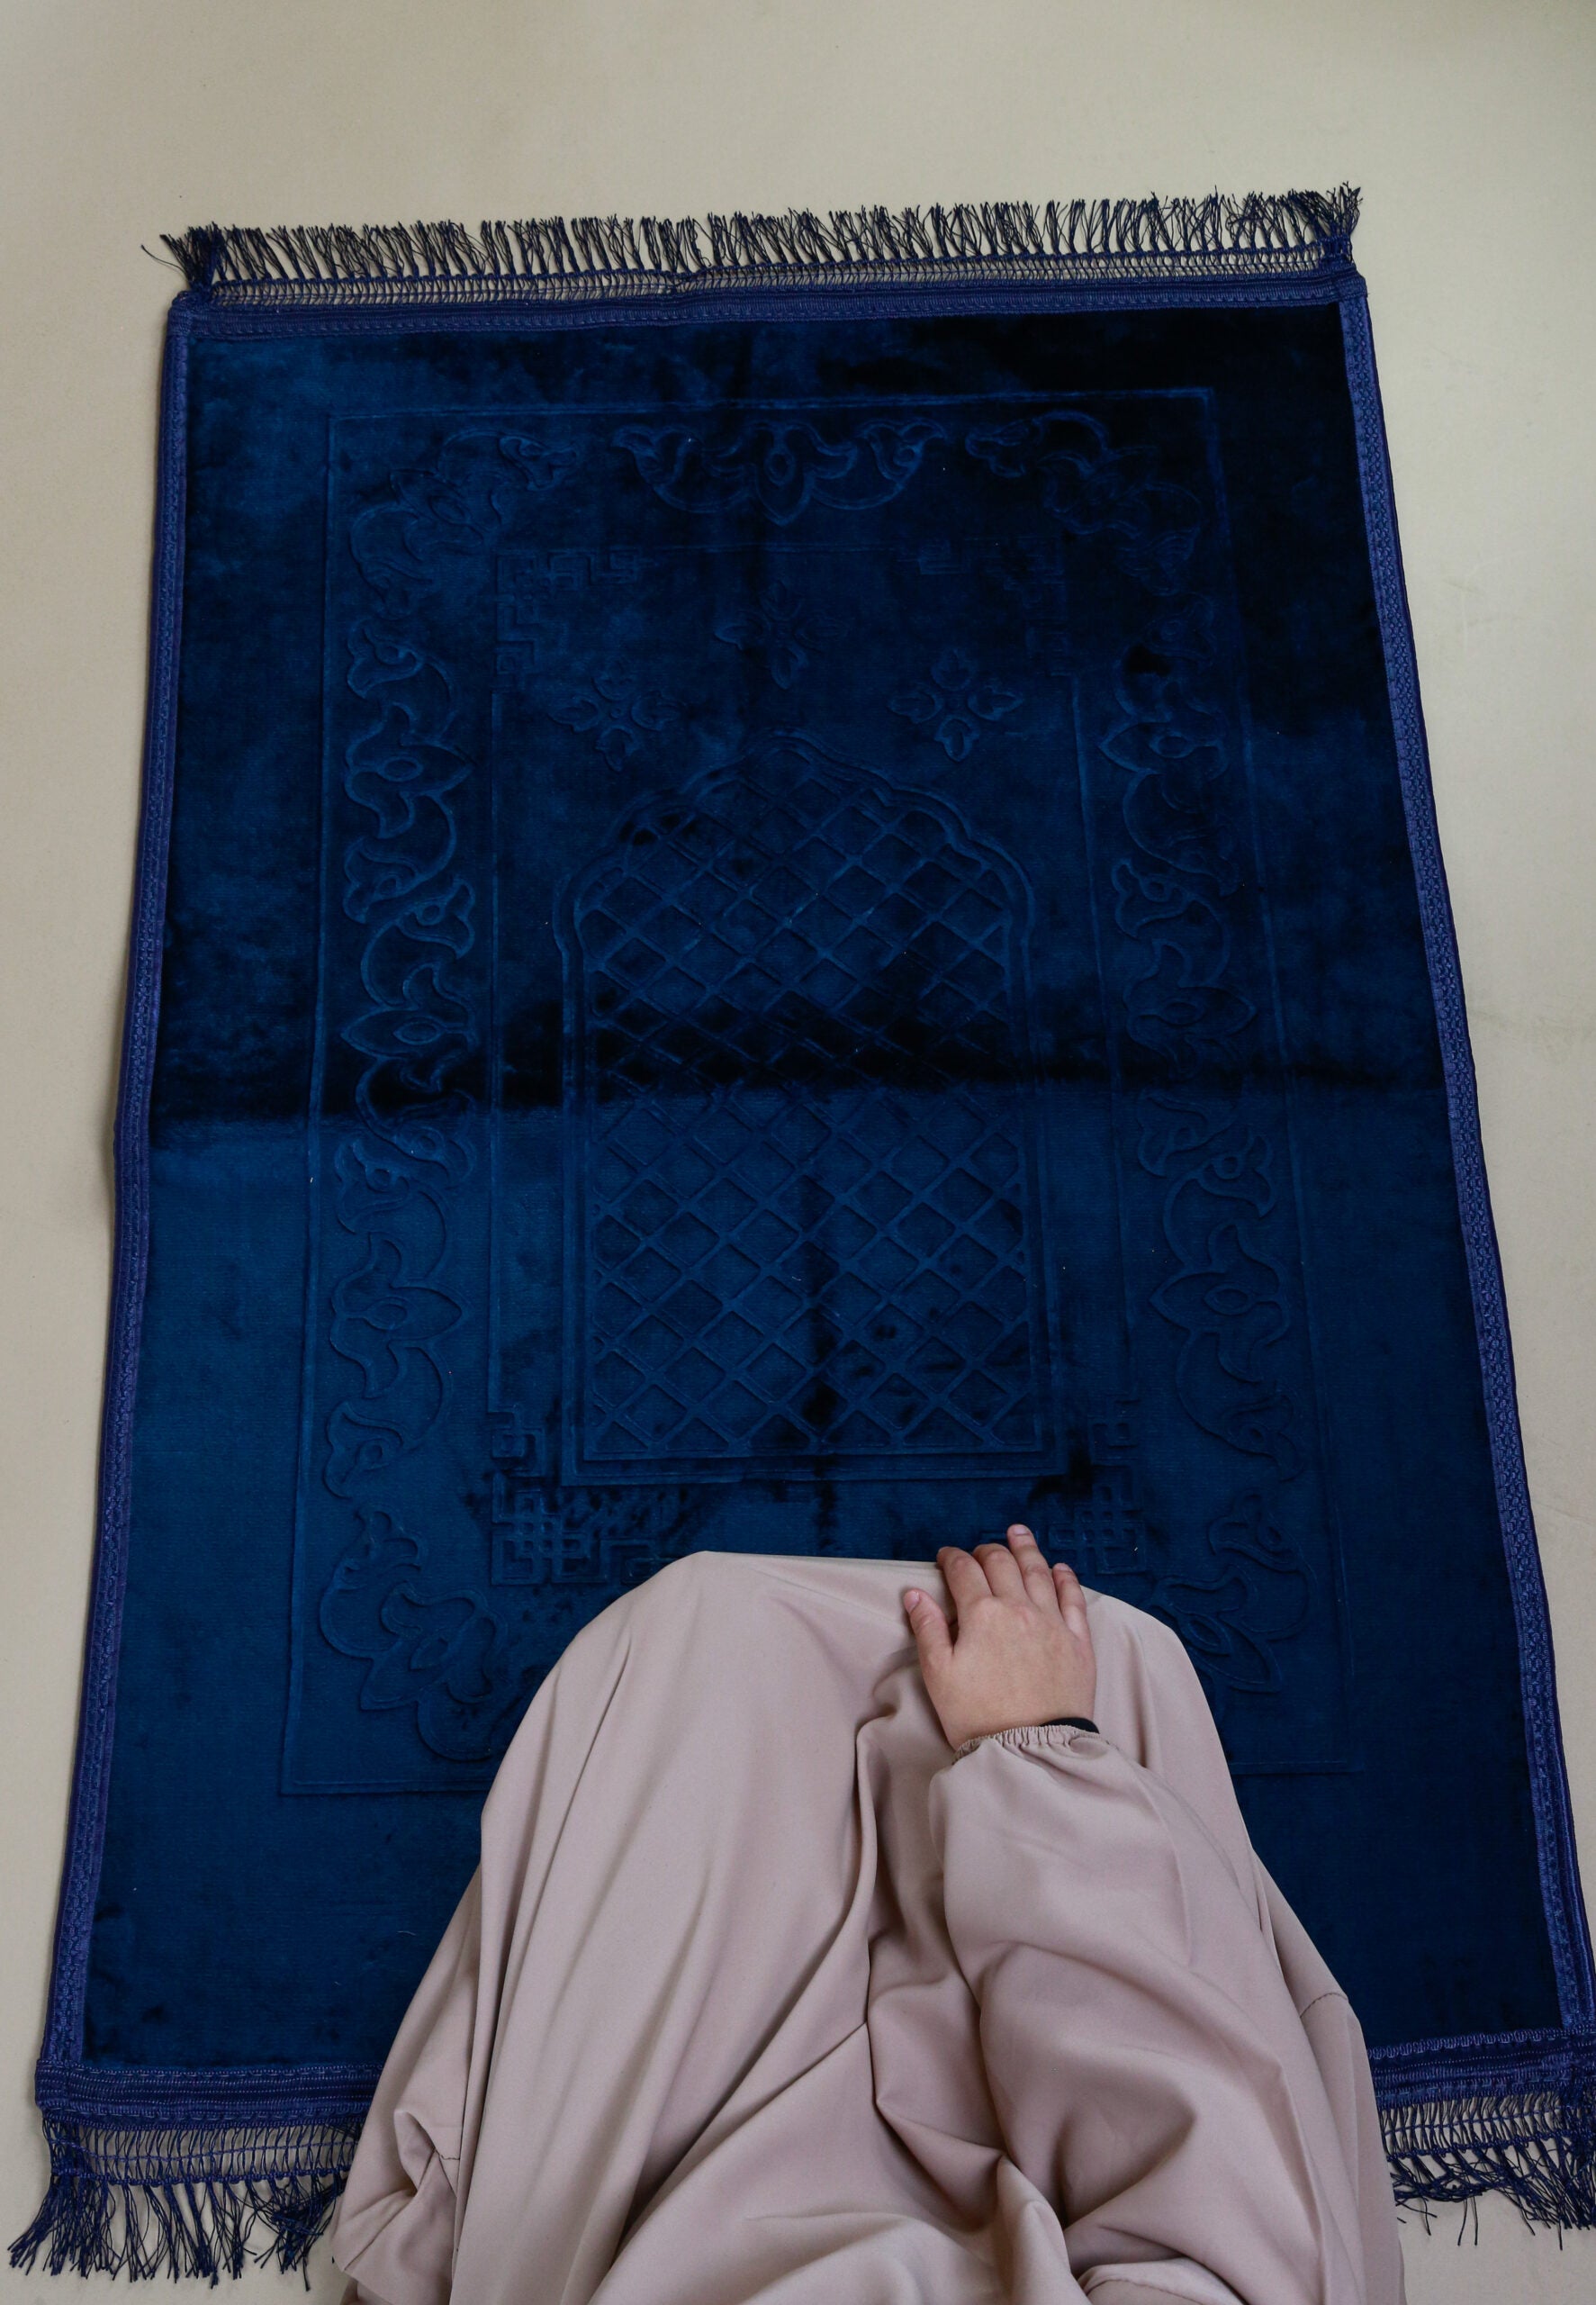 Tapis de prière musulmane en coton épais avec motifs imprimés, 80 x 120 cm  (rouge)